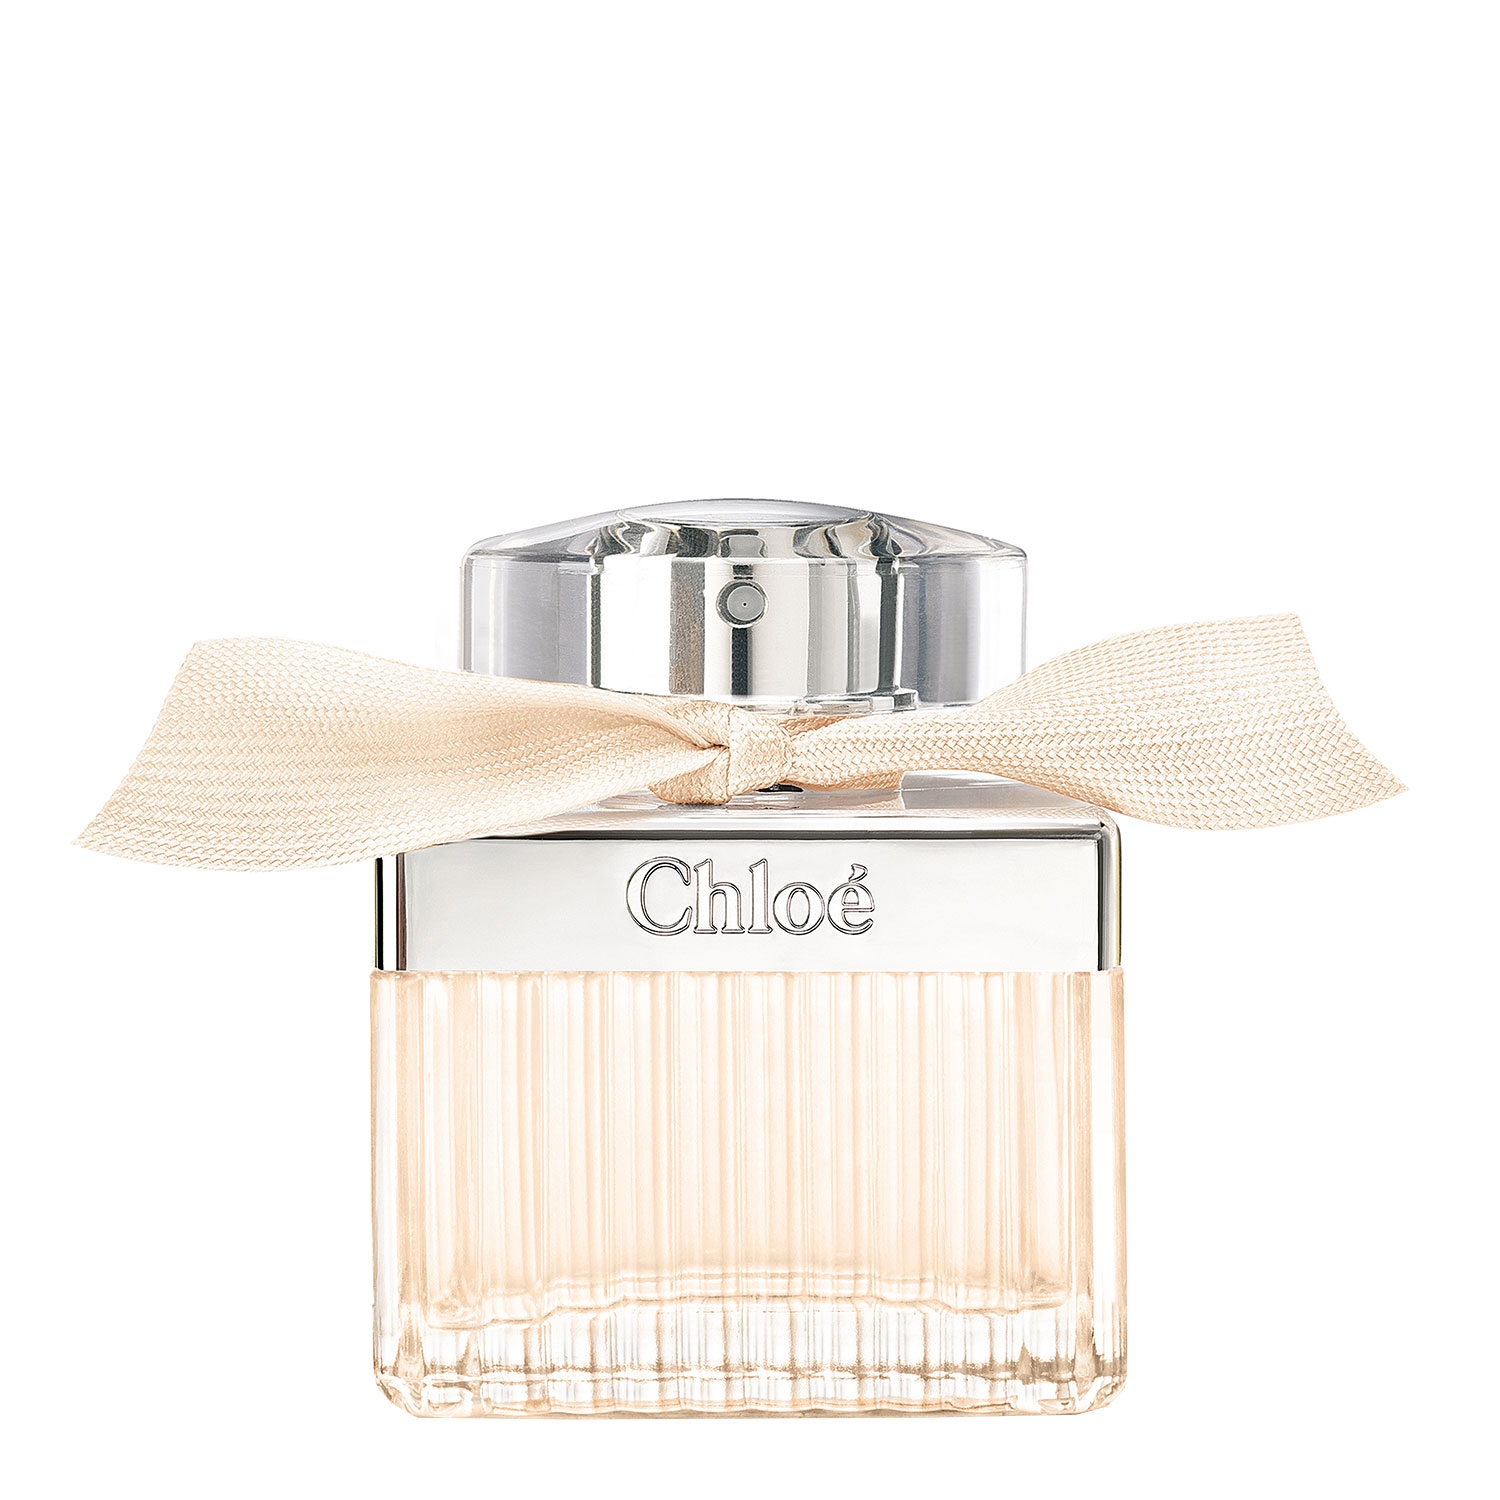 Produktbild von Chloé - Fleur de Parfum